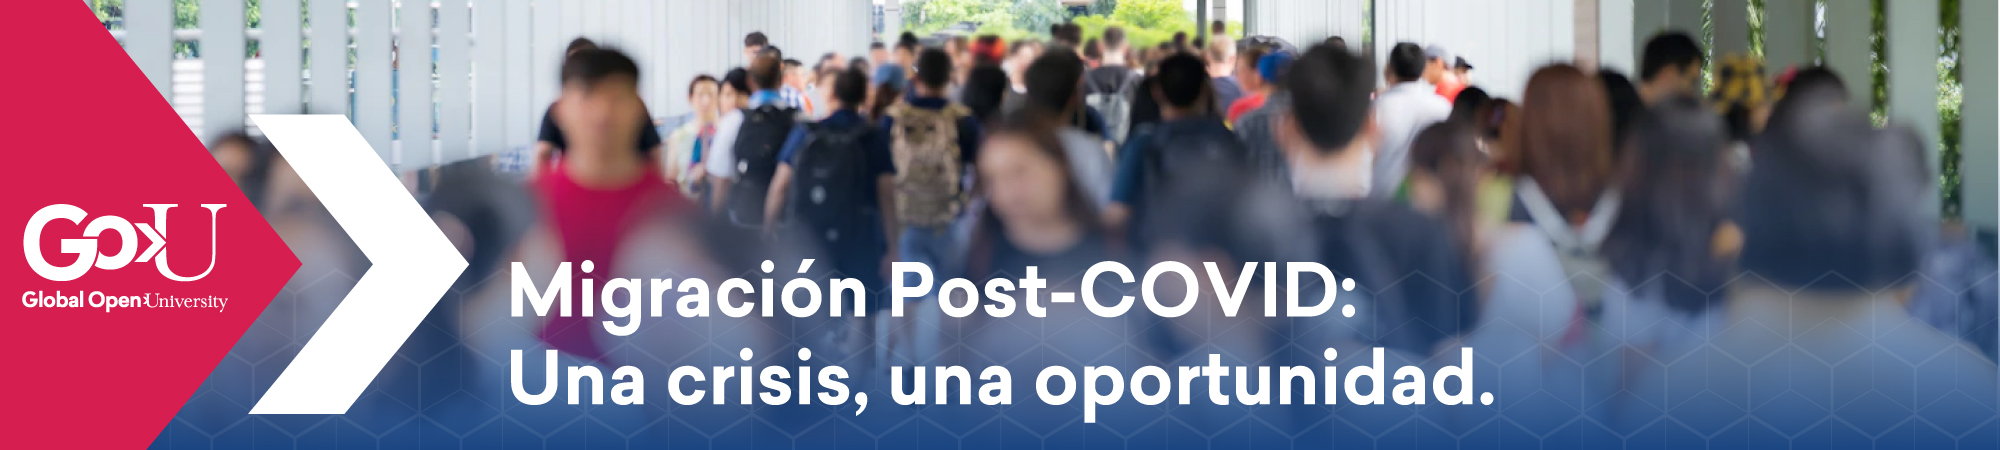 Migración Post-COVID: Una crisis, una oportunidad